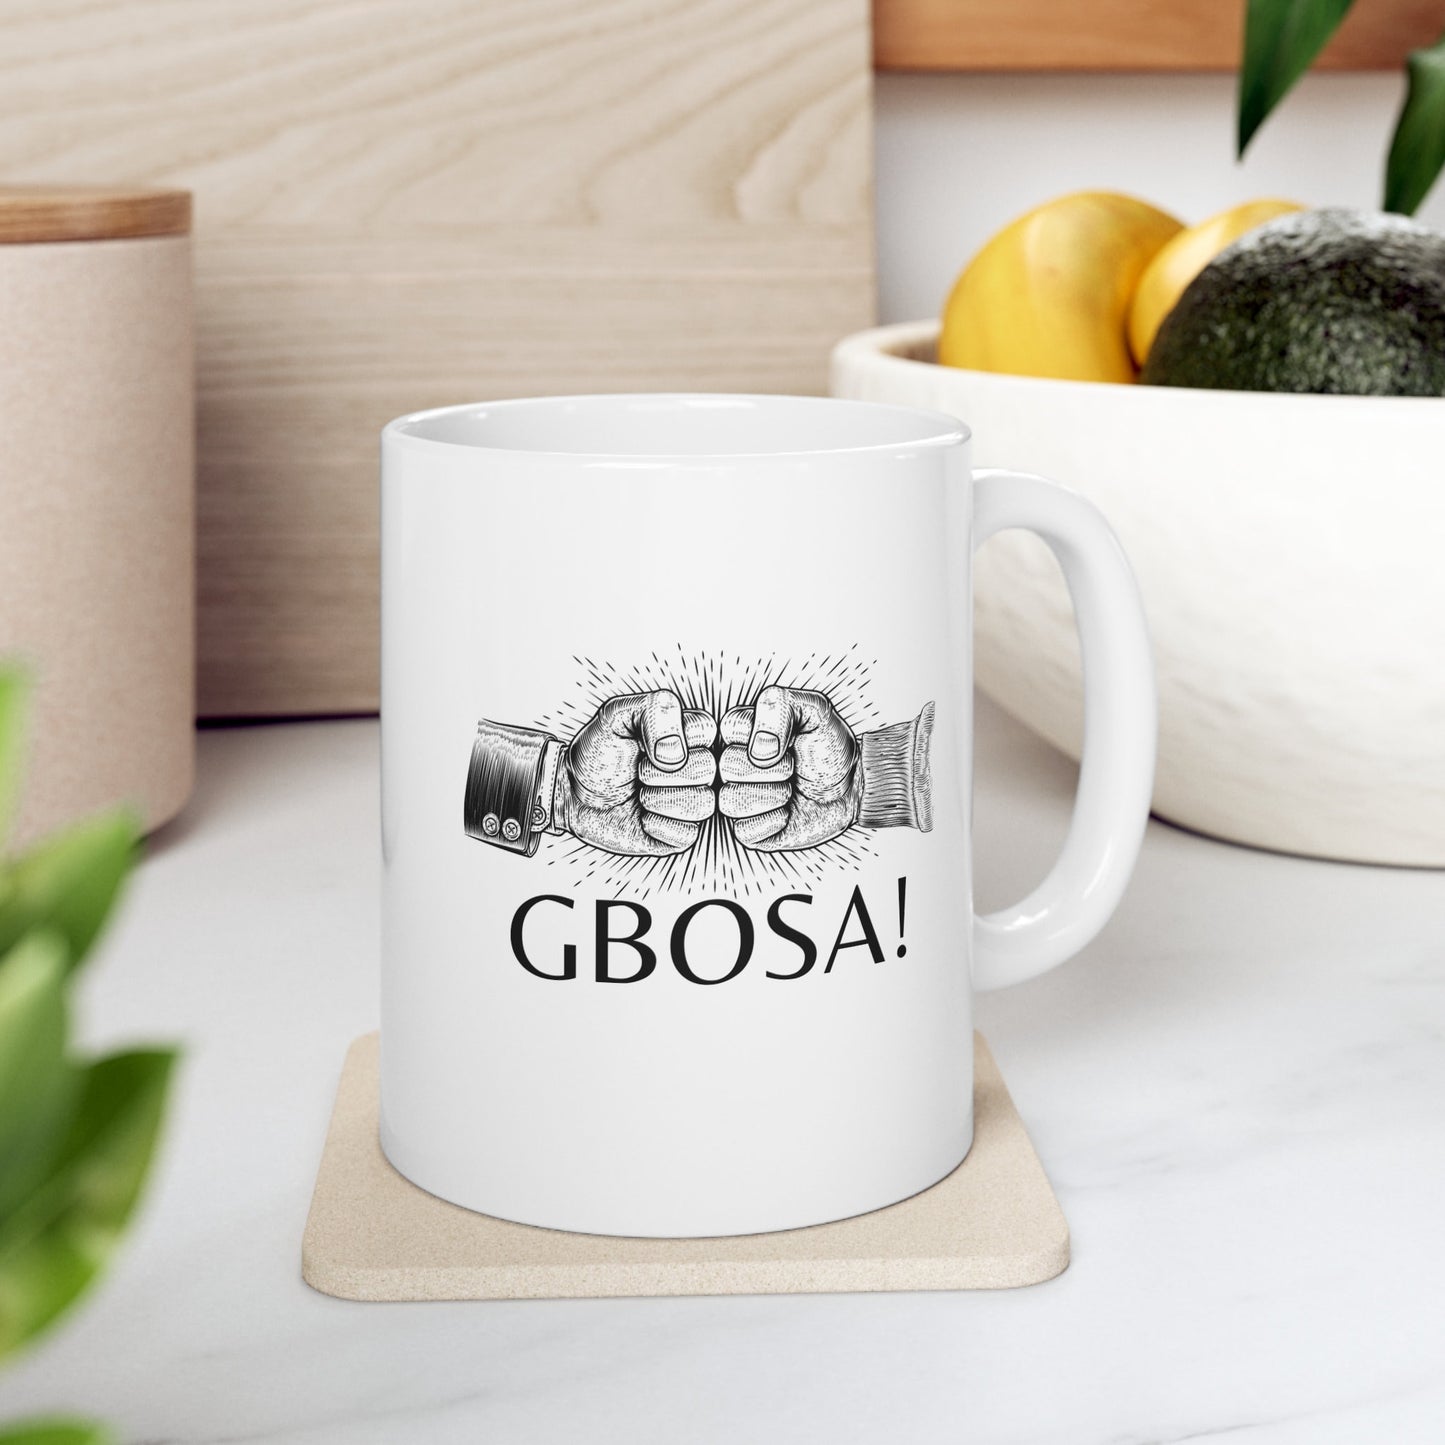 Gbosa Mug, Pidgin English Mug, Coffee Mug, Gift Mug, Holiday Mug, Ceramic Mug